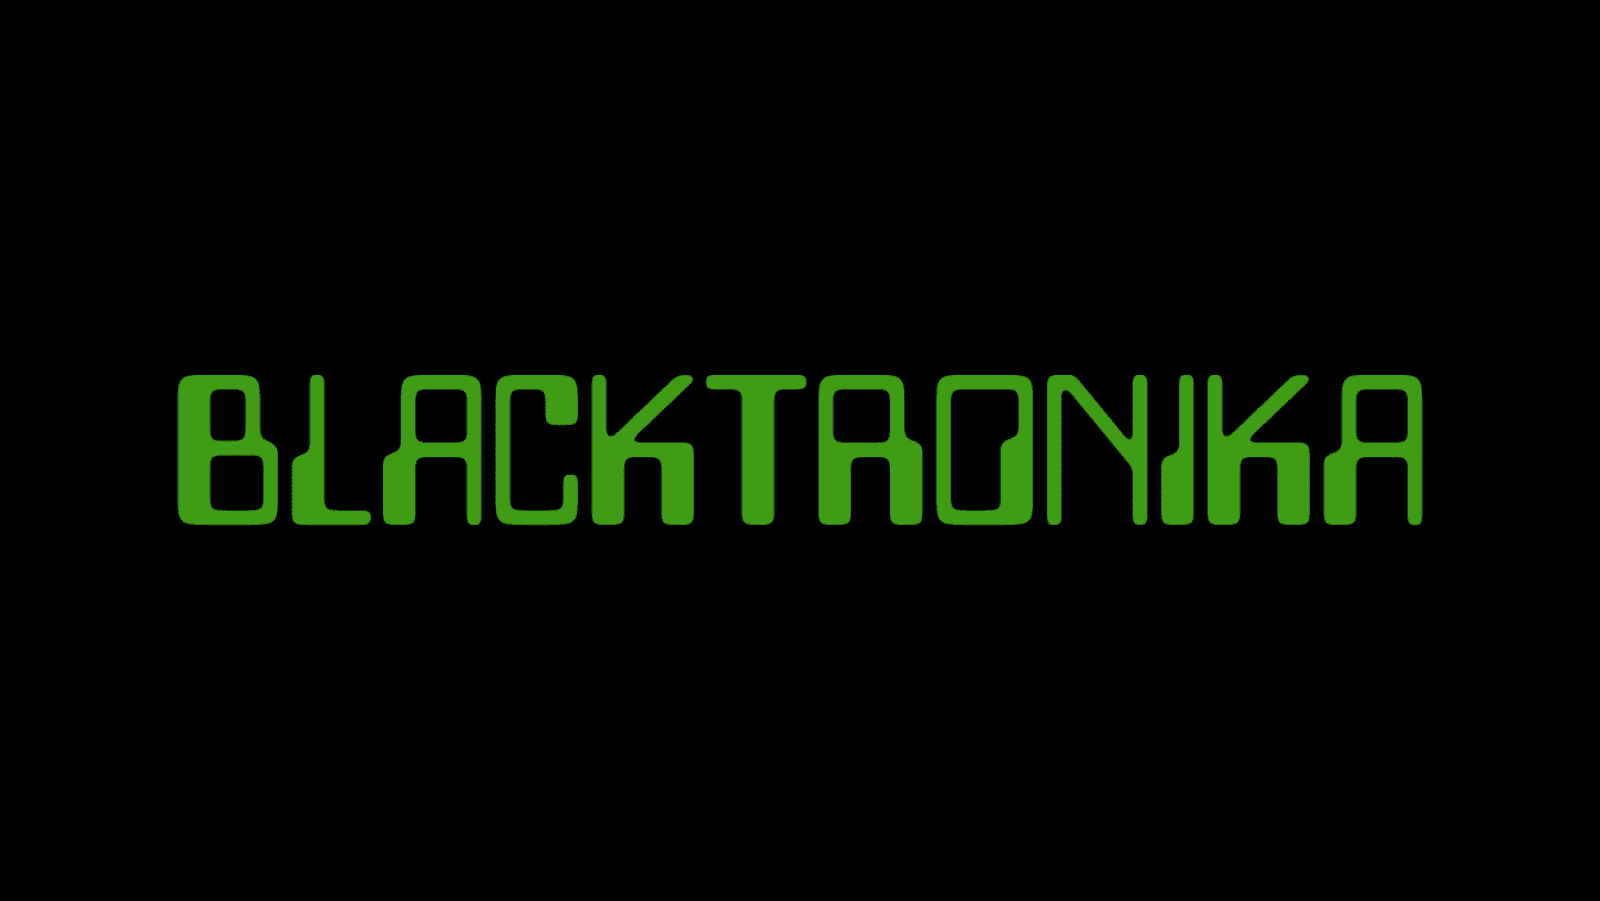 Workshop: Blacktronika – Afrofuturism in Electronic Music